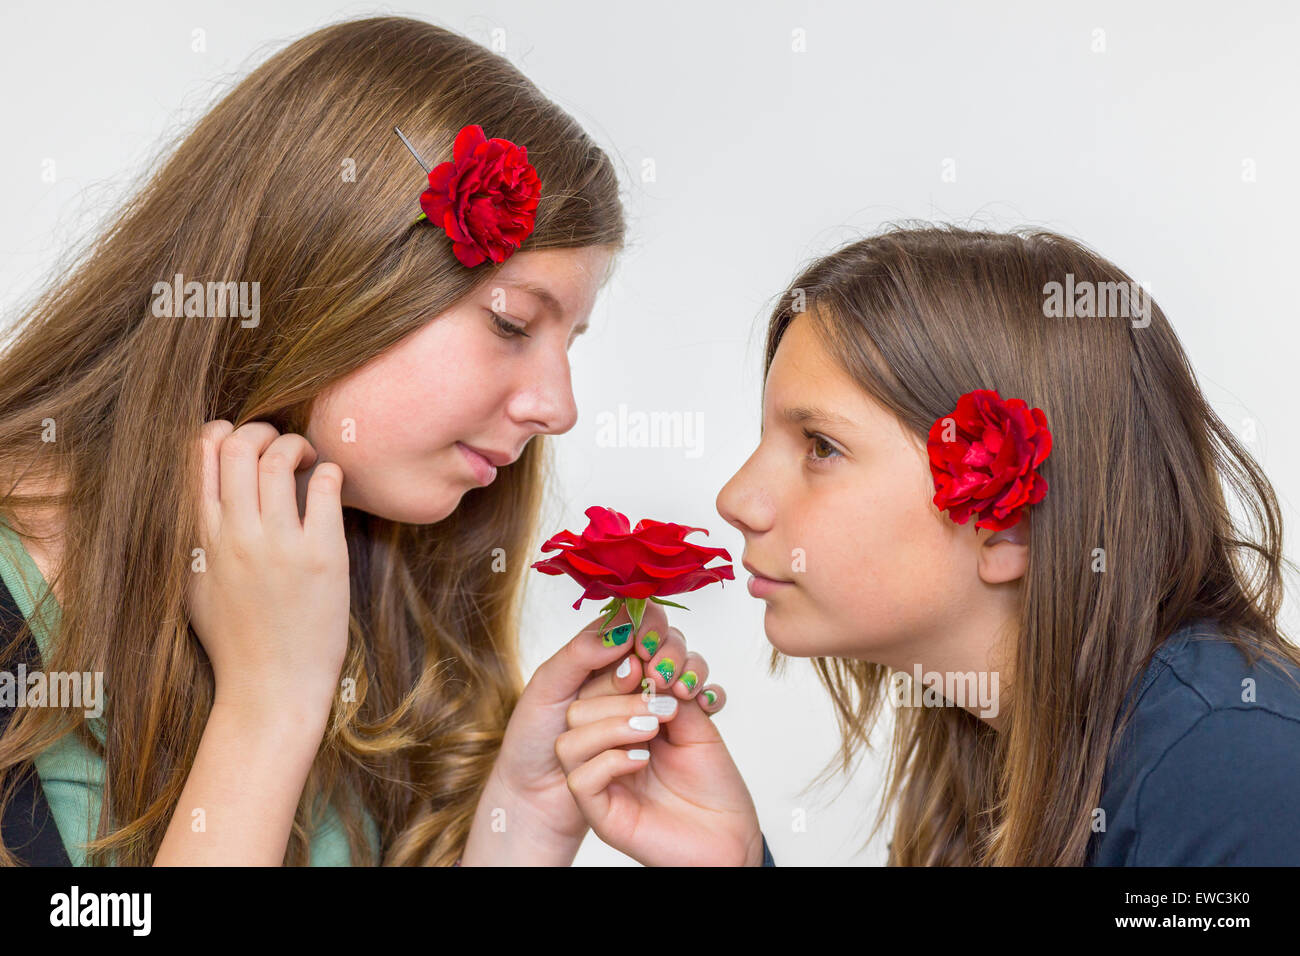 Portrait de deux adolescentes de race blanche odeur de roses rouges Banque D'Images